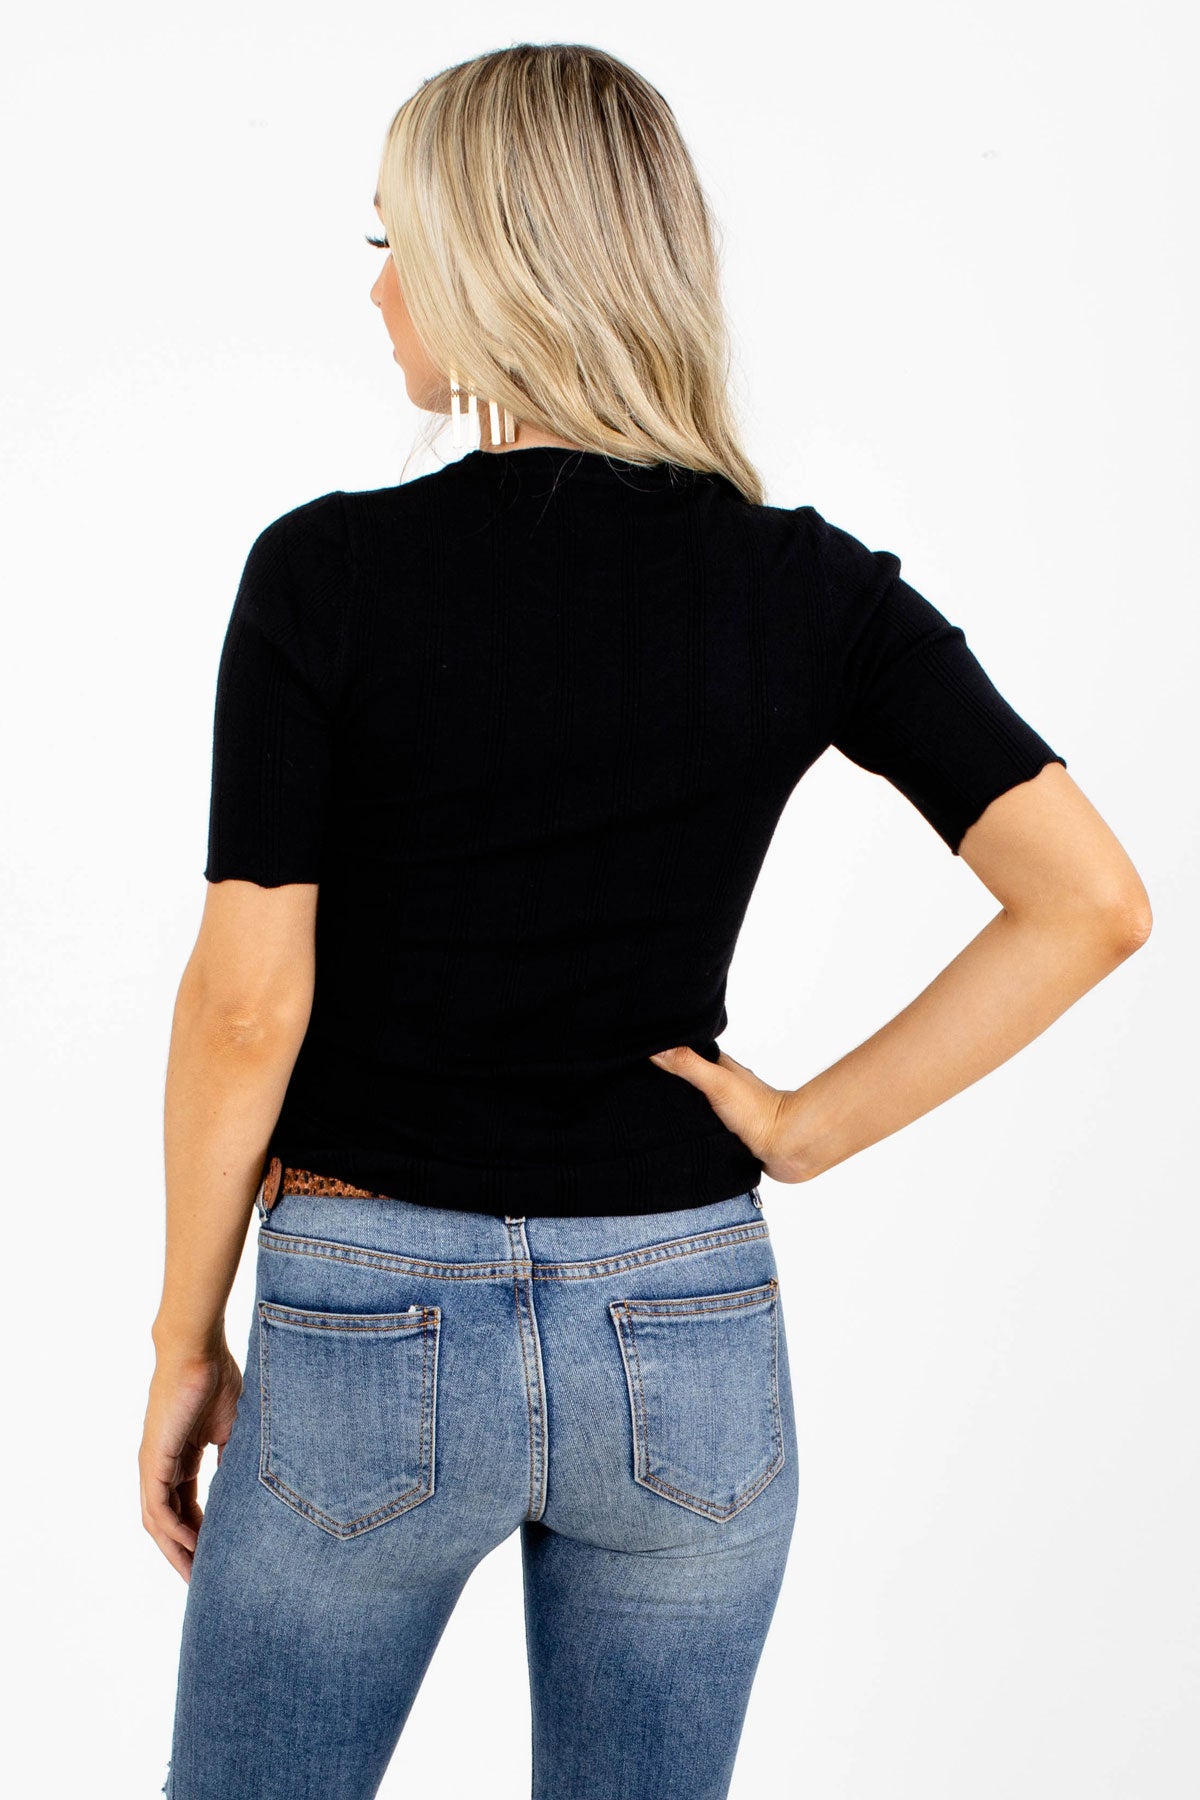 Women's Black Short Sleeve Boutique Top